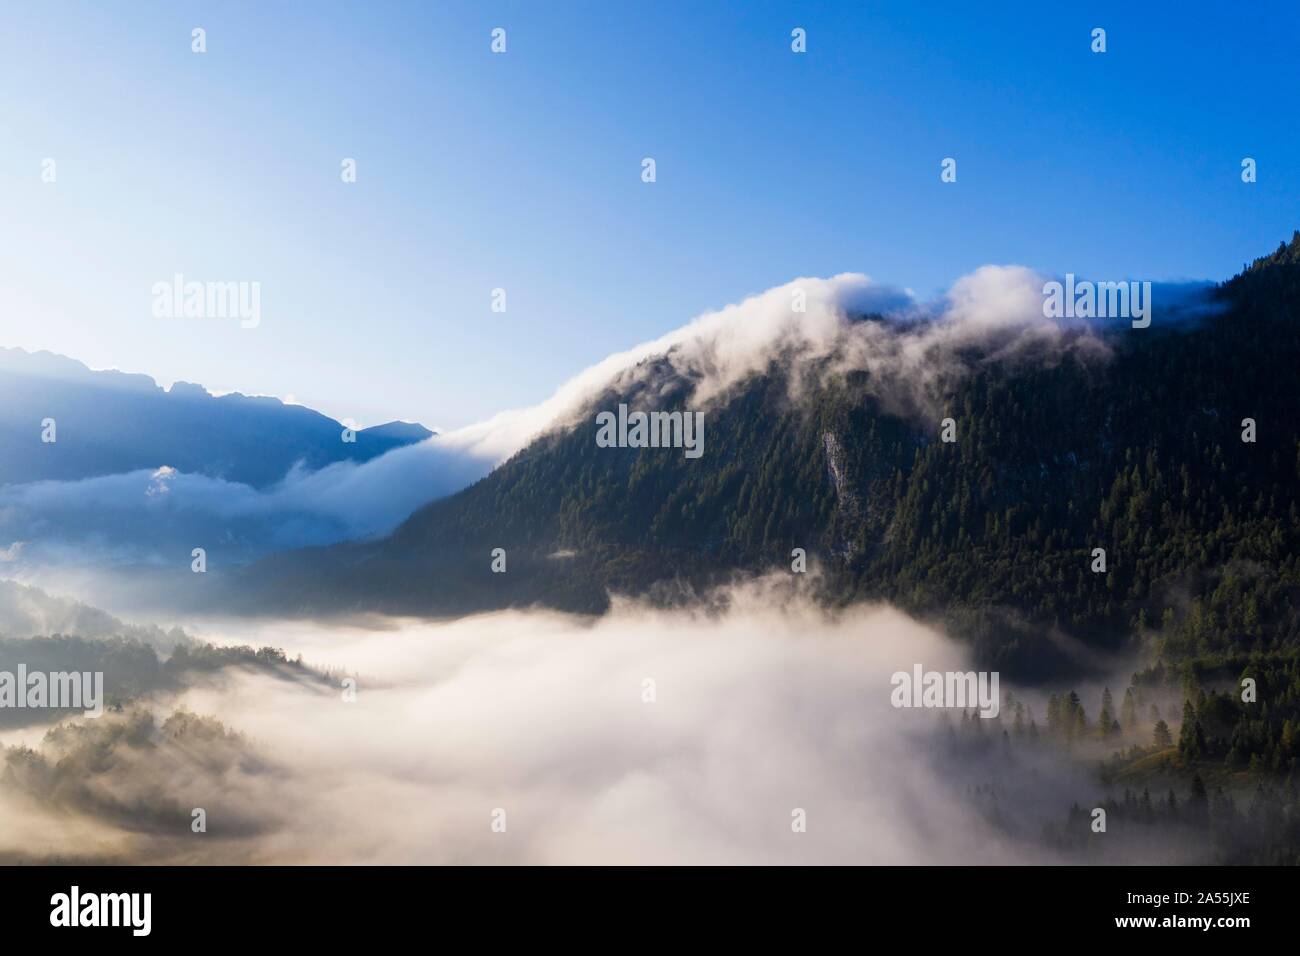 Grunkopf, summit covered in fog, Ferchenseewande, near Mittenwald, aerial view, Werdenfelser Land, Wetterstein range, Upper Bavaria, Bavaria Stock Photo